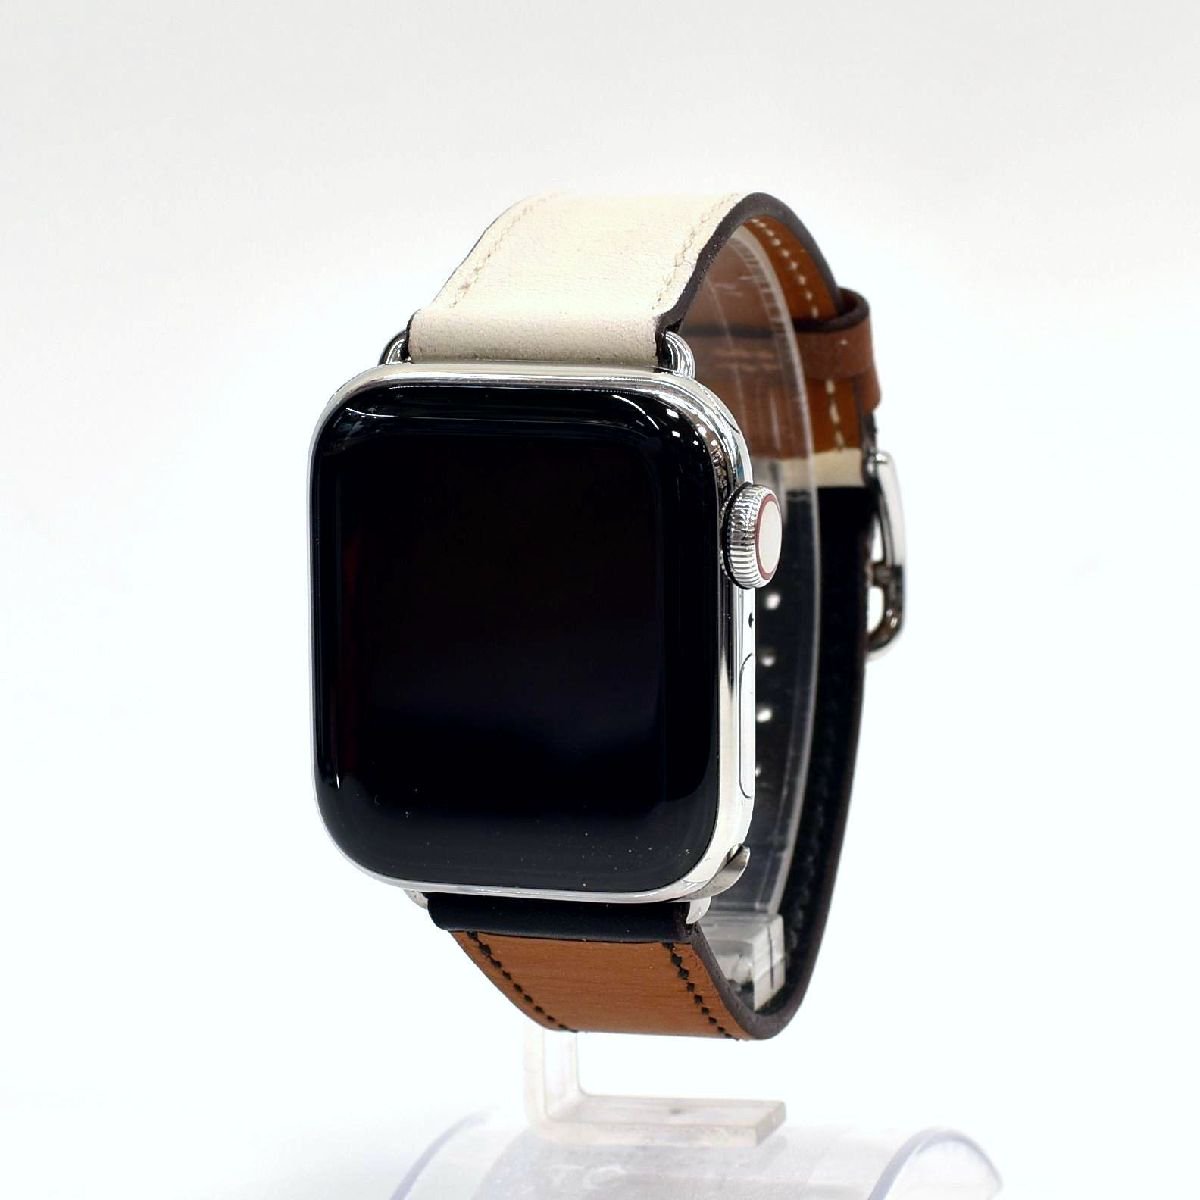 数量限定・即納特価!! Apple Watch HERMES series6 40mm エルメス